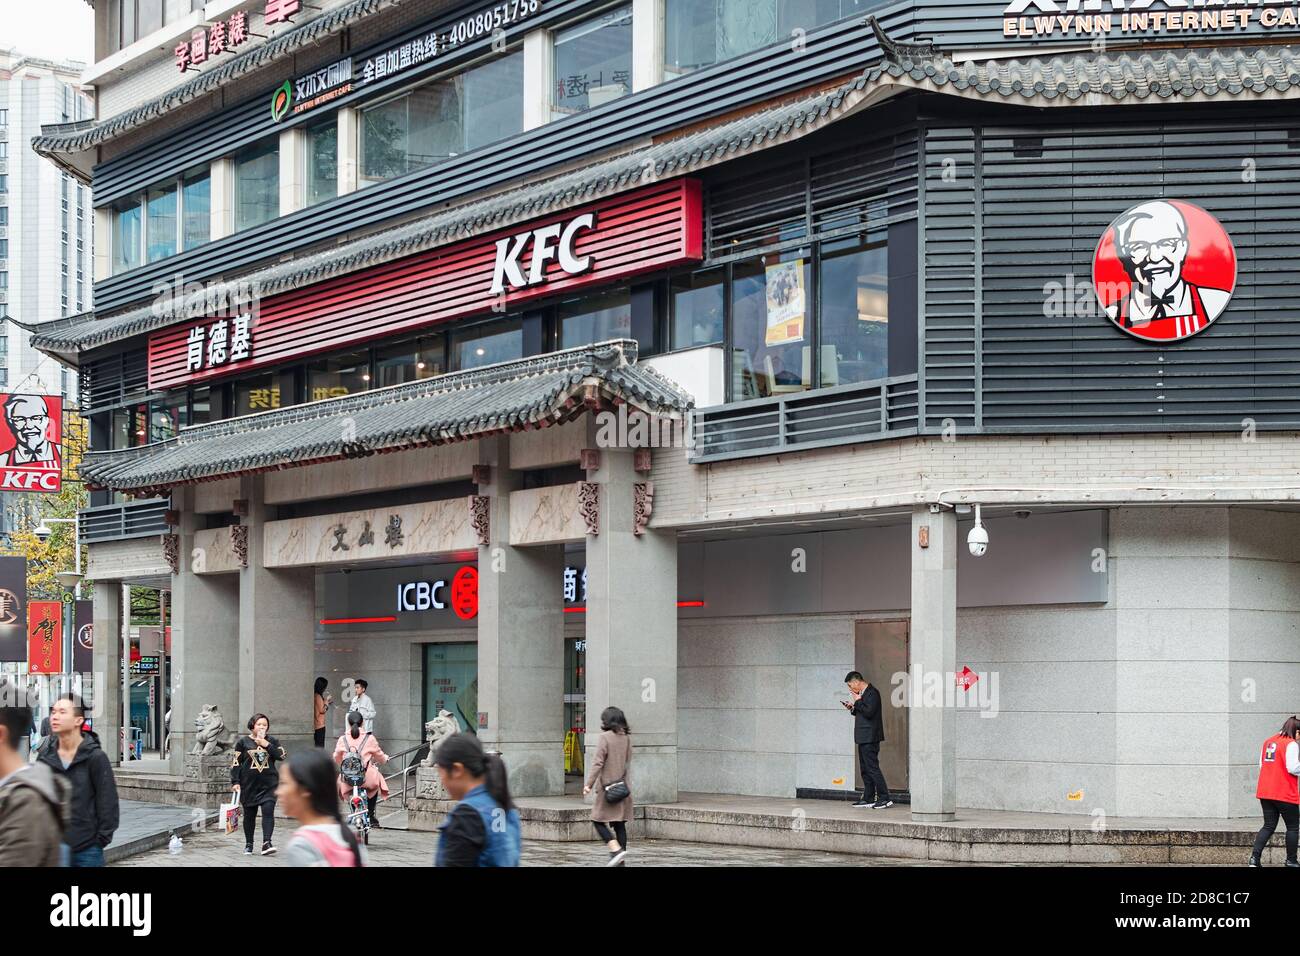 Außenansicht im Gebäude mit traditioneller chinesischer Architektur mit KFS Restaurant, Büro ICBC Bankfiliale. Shenzhen, China, 2018-03-08. Foto mit Stockfoto